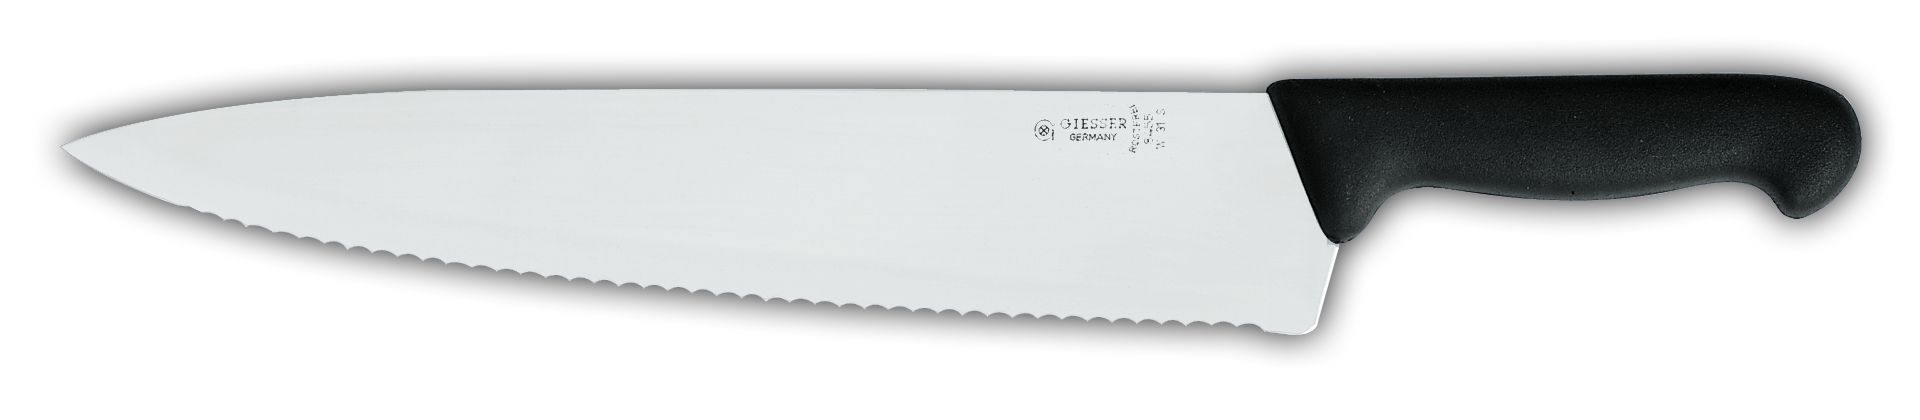 Нож поварской и рыбный 8455w , волнистое лезвие, 31 см,  черная рукоятка